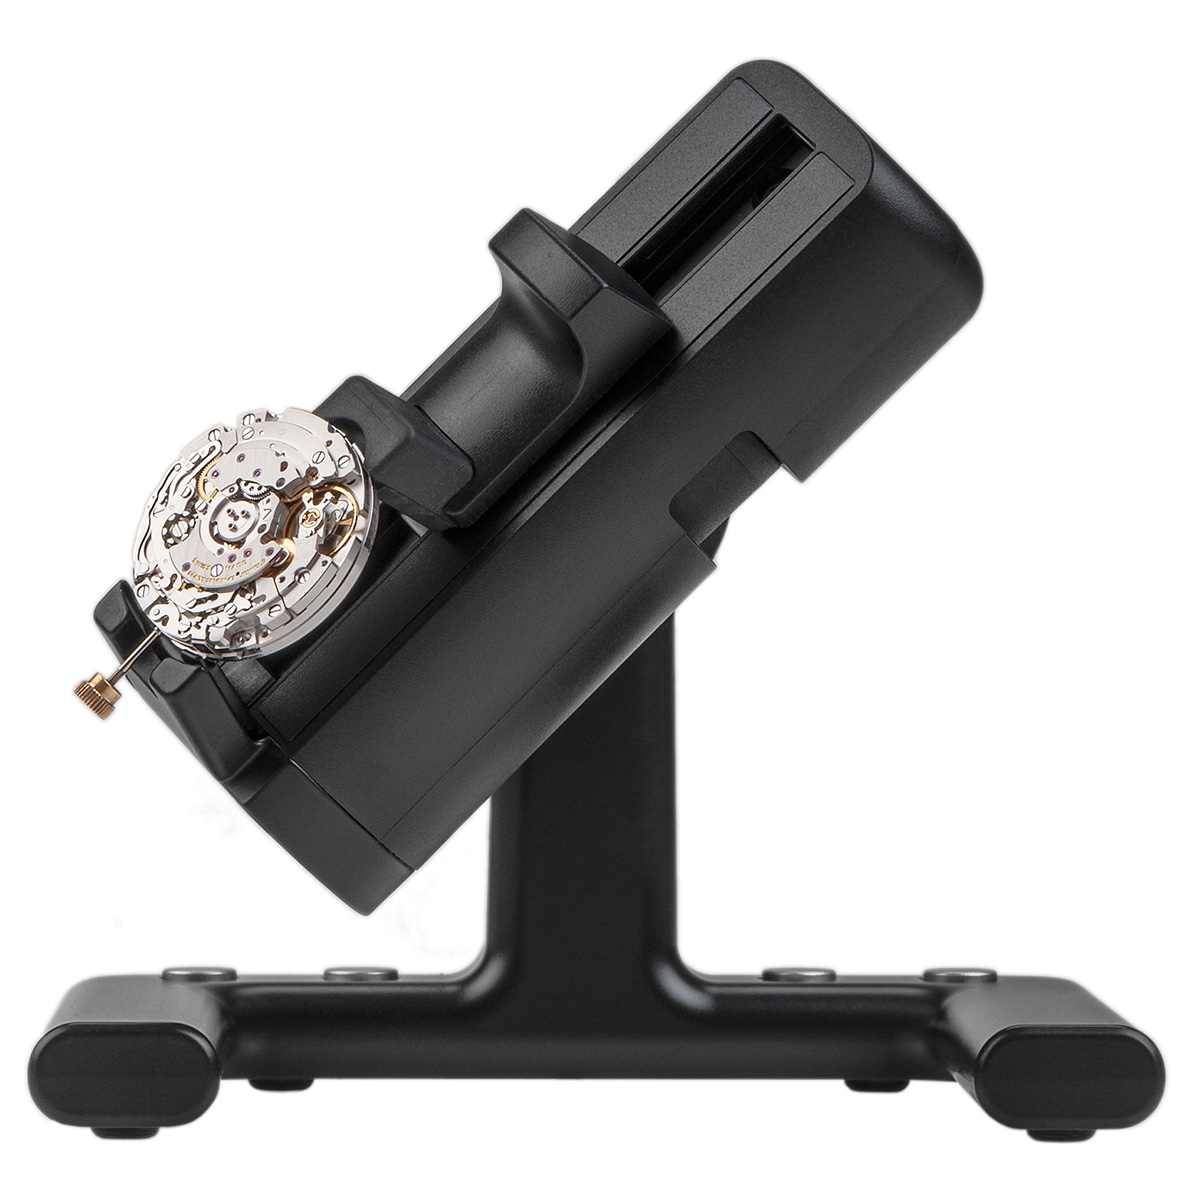 Witschi Watch Expert Prüfgerät für mechanische Uhren